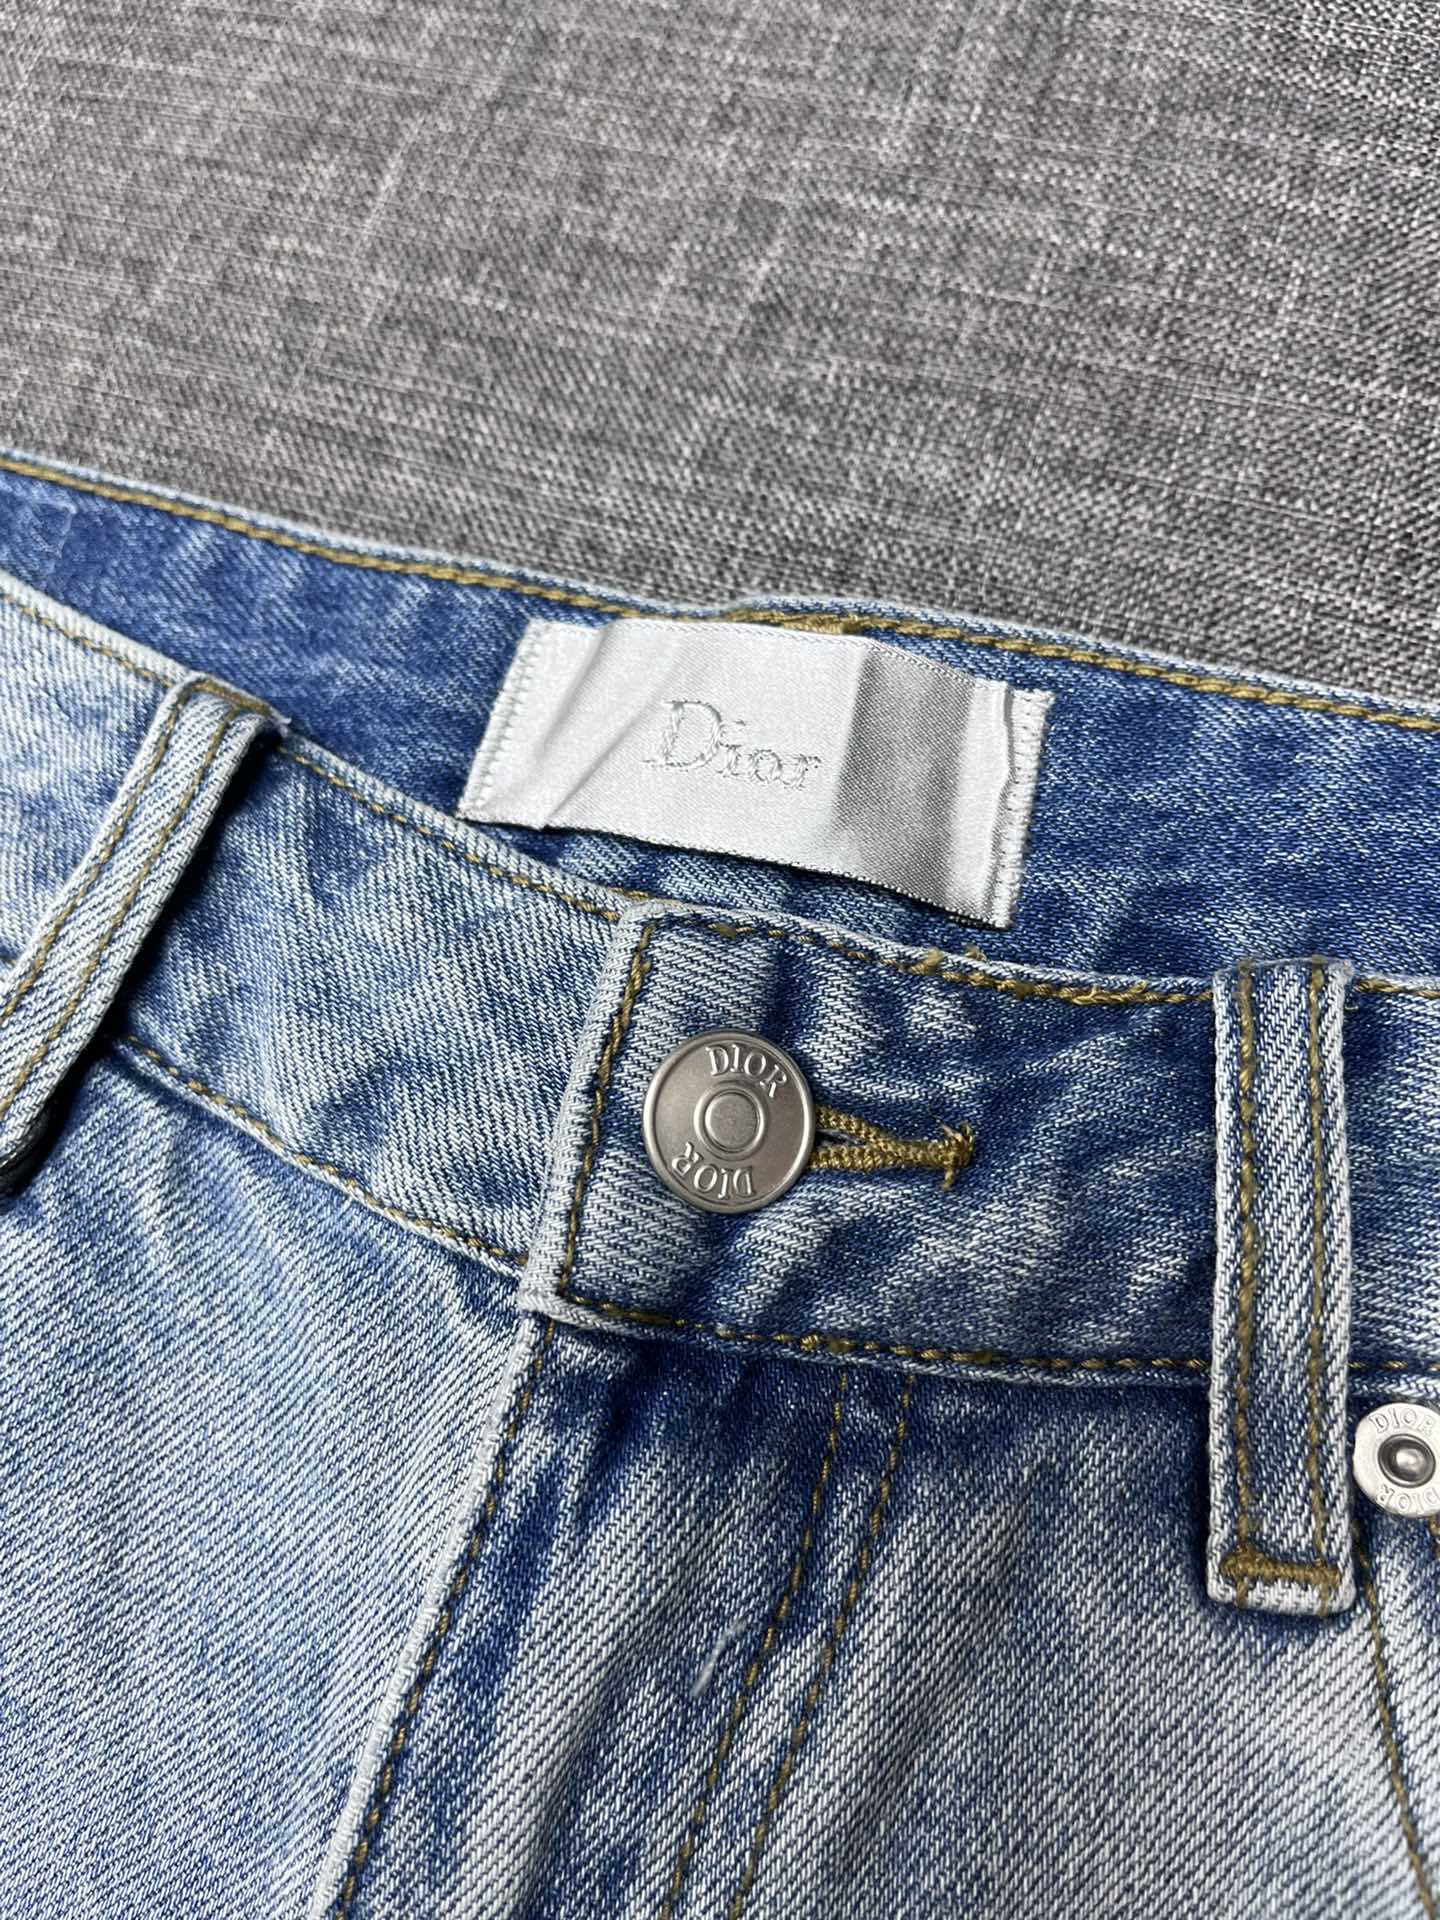 Dior迪奥家2024新款牛仔裤高档大气富有时尚元素原单牛仔裤百年奢侈品牌极具英国传统高贵的设计风格赢取